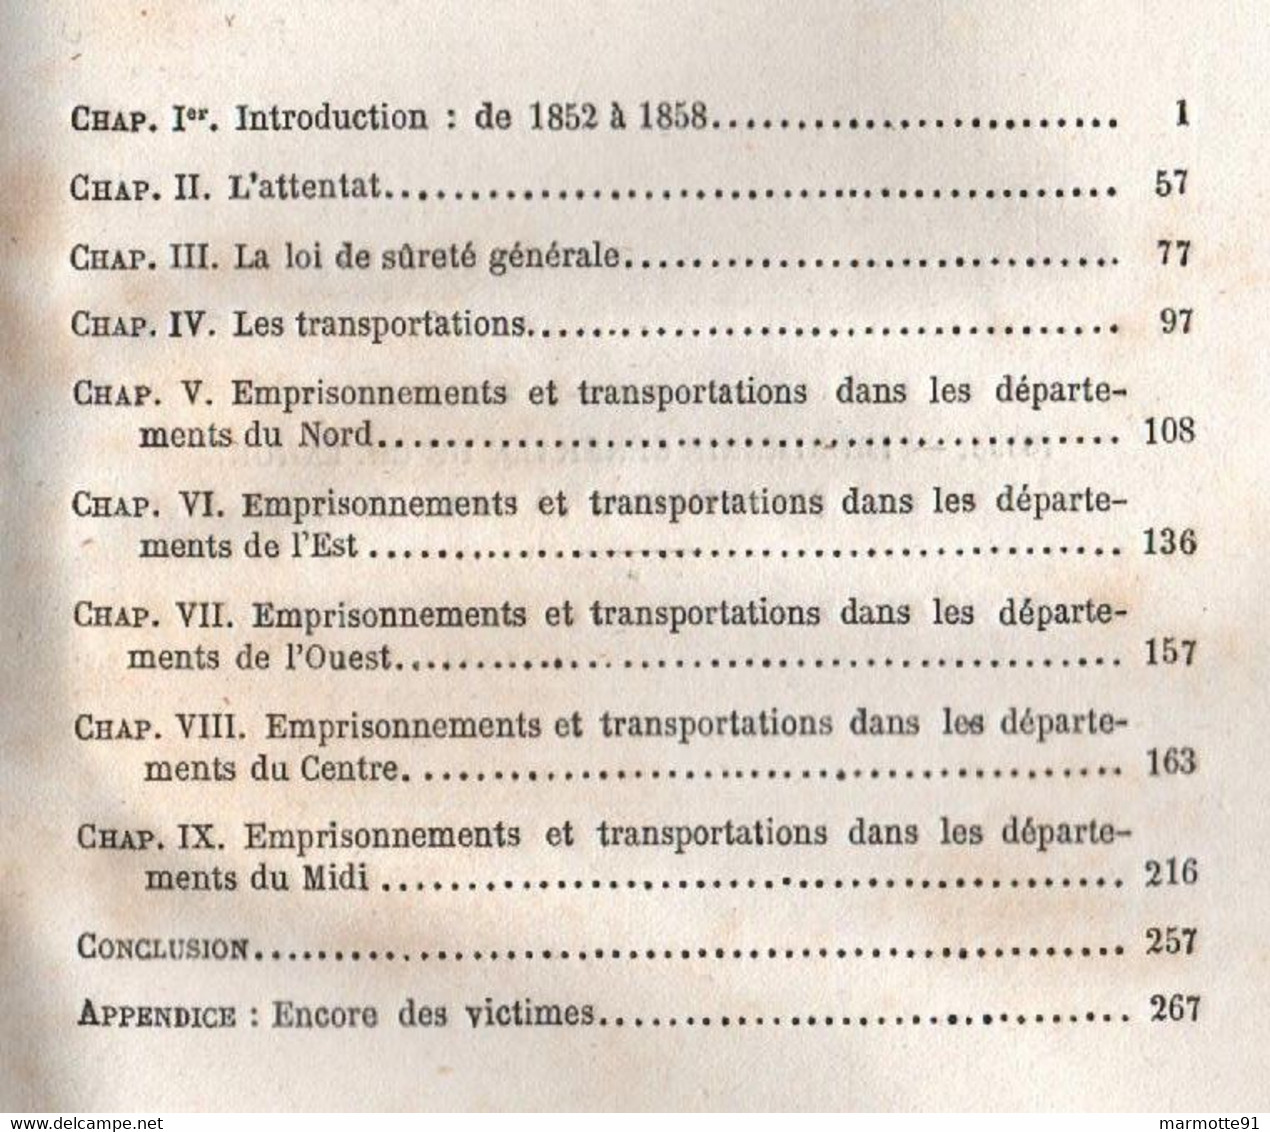 LES SUSPECTS EN 1858 LOI DE SURETE GENERALE EMPRISONNEMENTS TRANSPORTATIONS PAR E. TENOT ET A. DUBOST - Soziologie